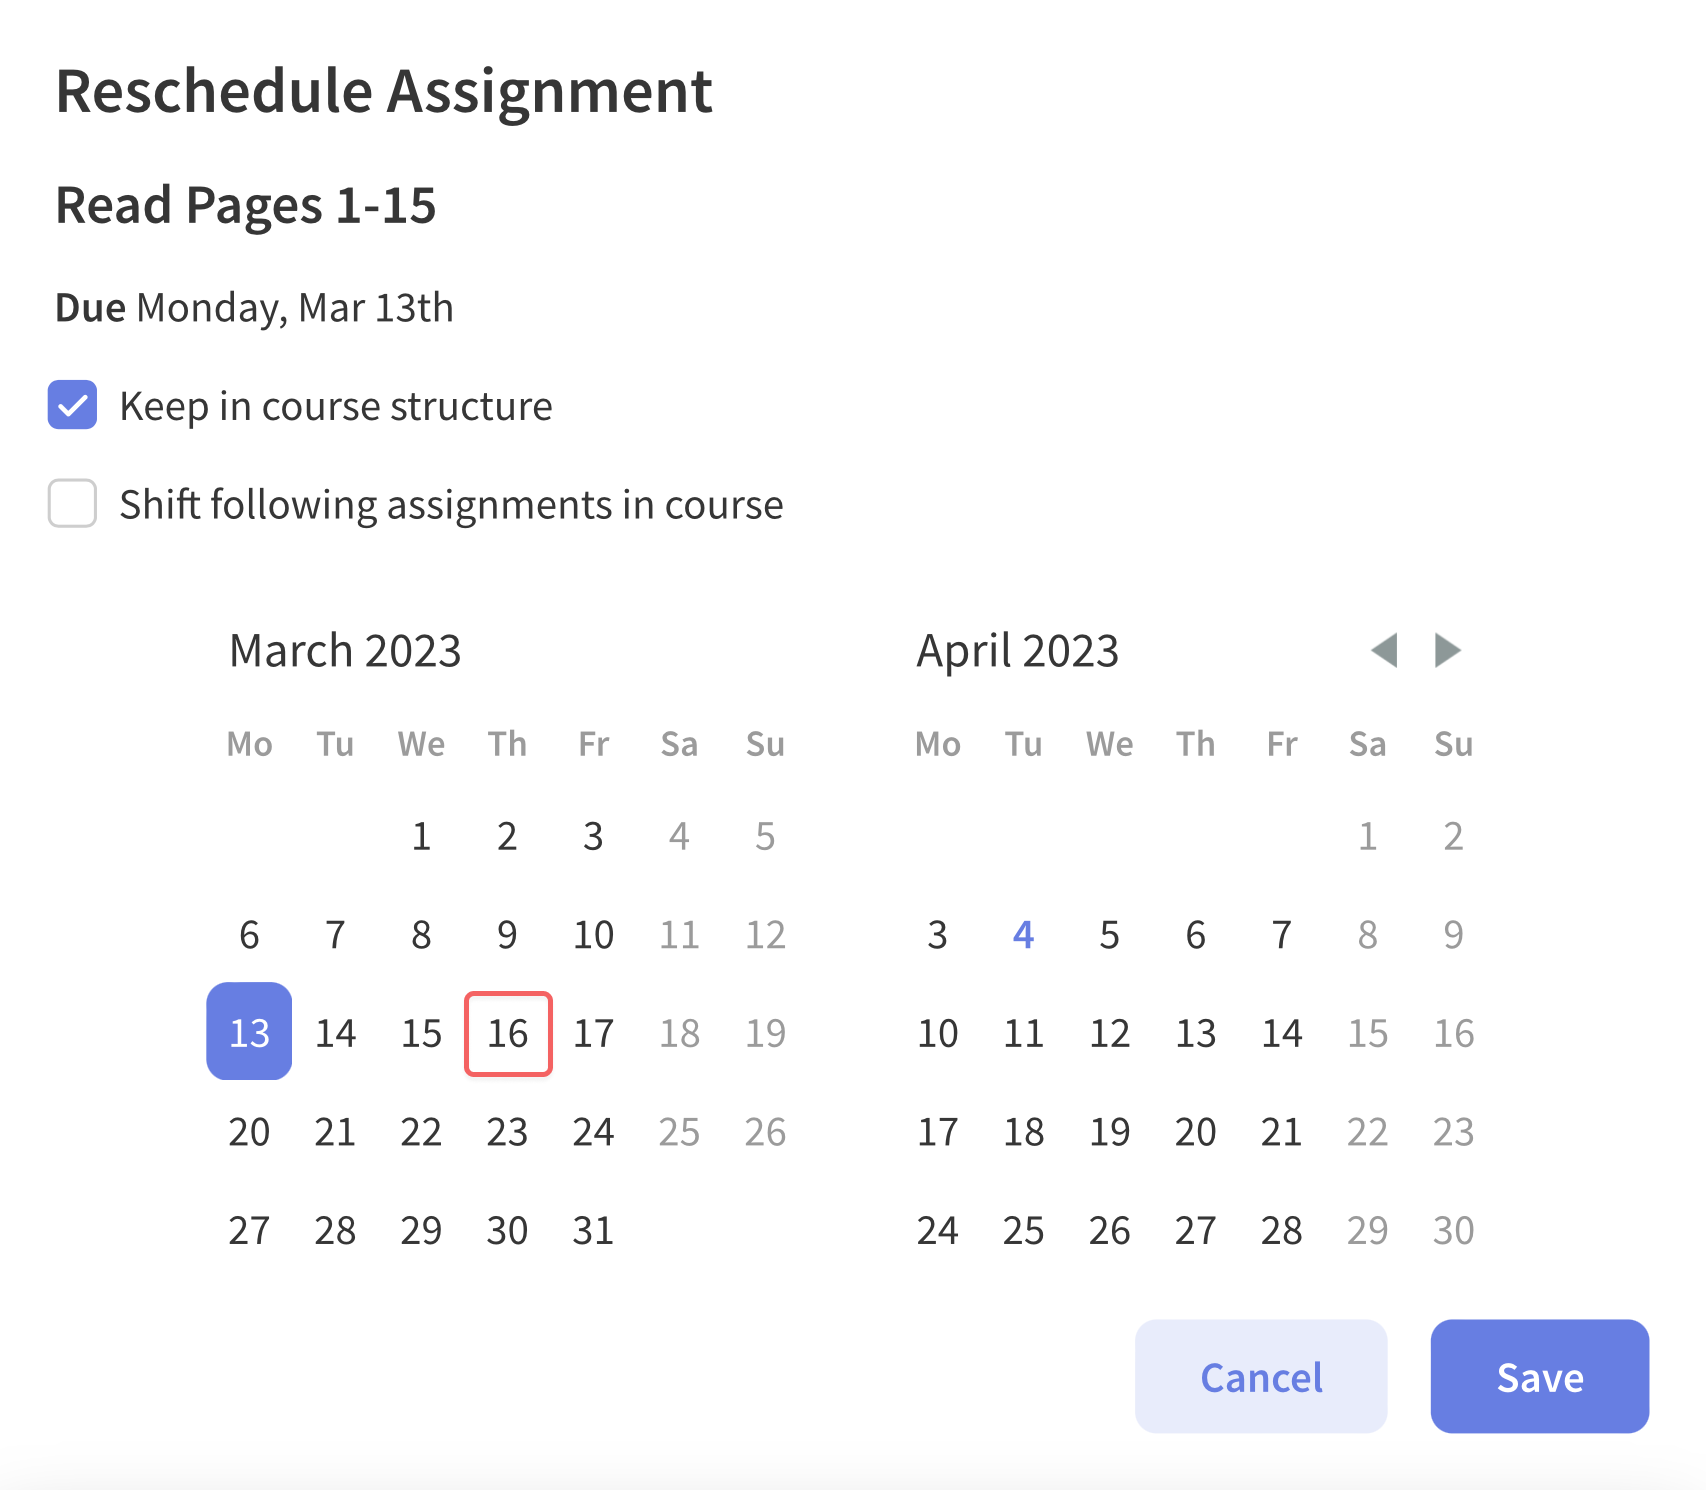 Reschedule Assignment Modal